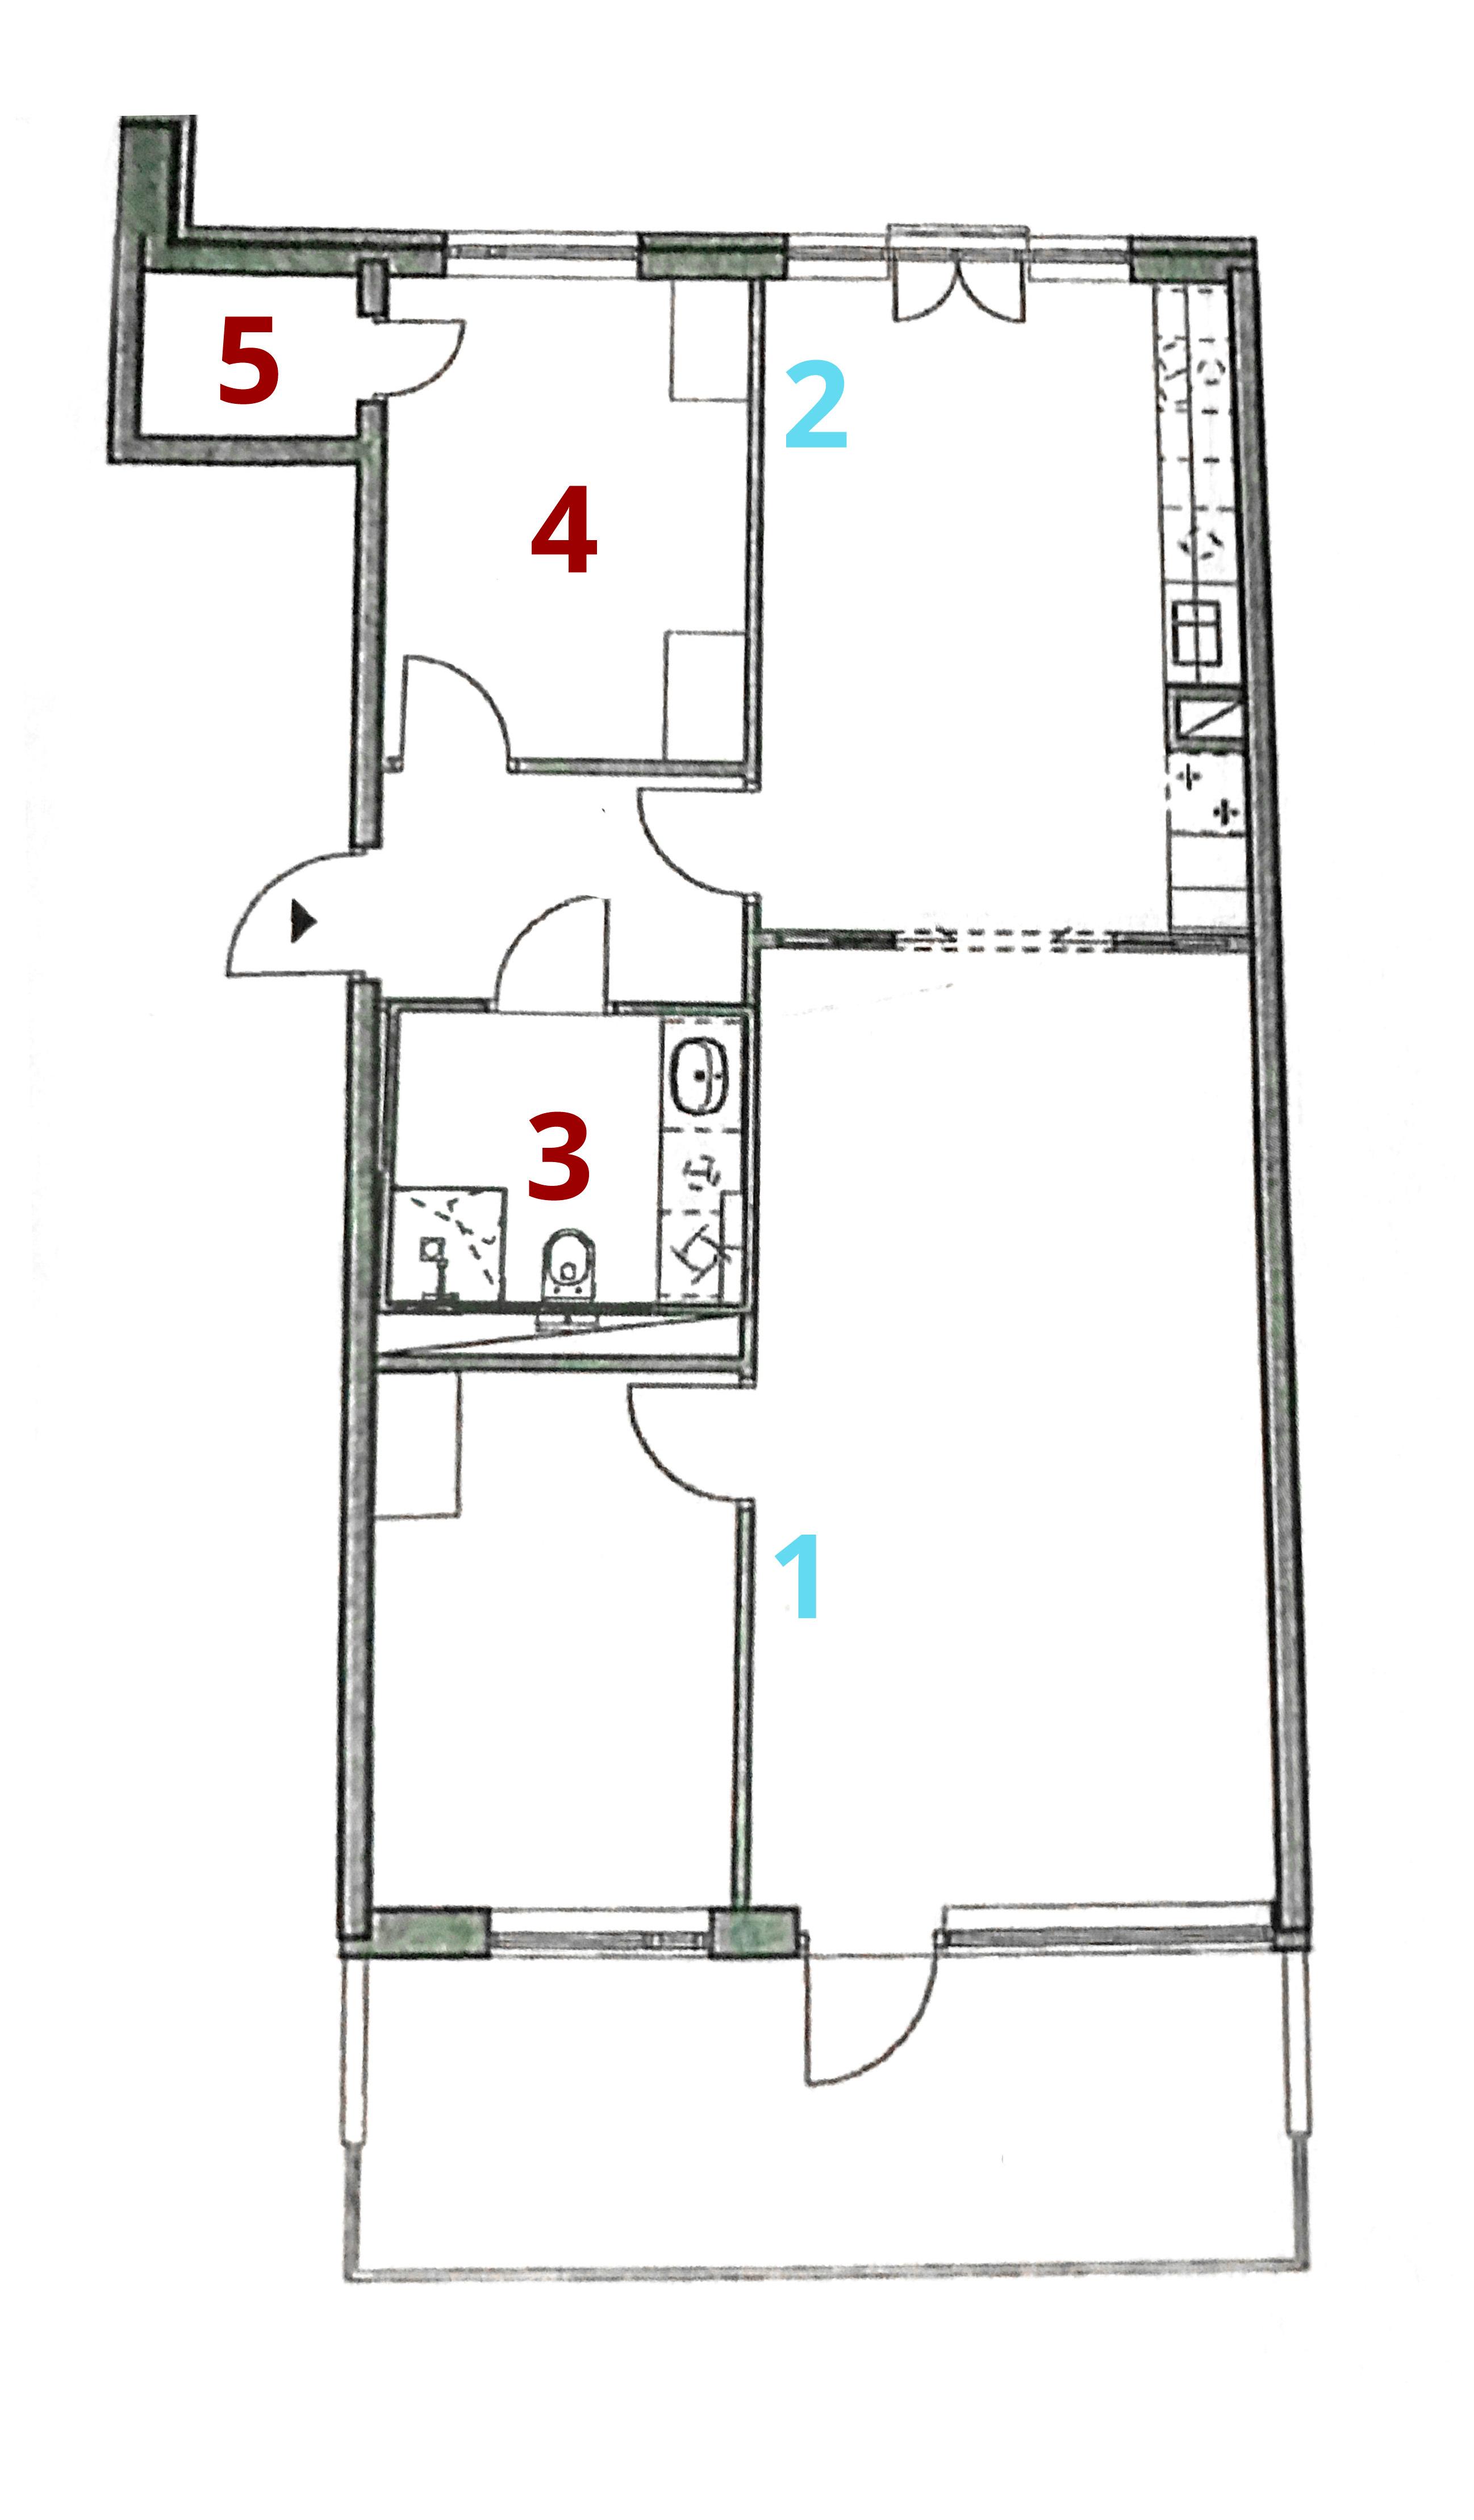 Slik ser testleiligheten ut. 1 og 2 er plasseringen av Velop-enhetene, resten er punktene som vanligvis er problemområder i leiligheten. .